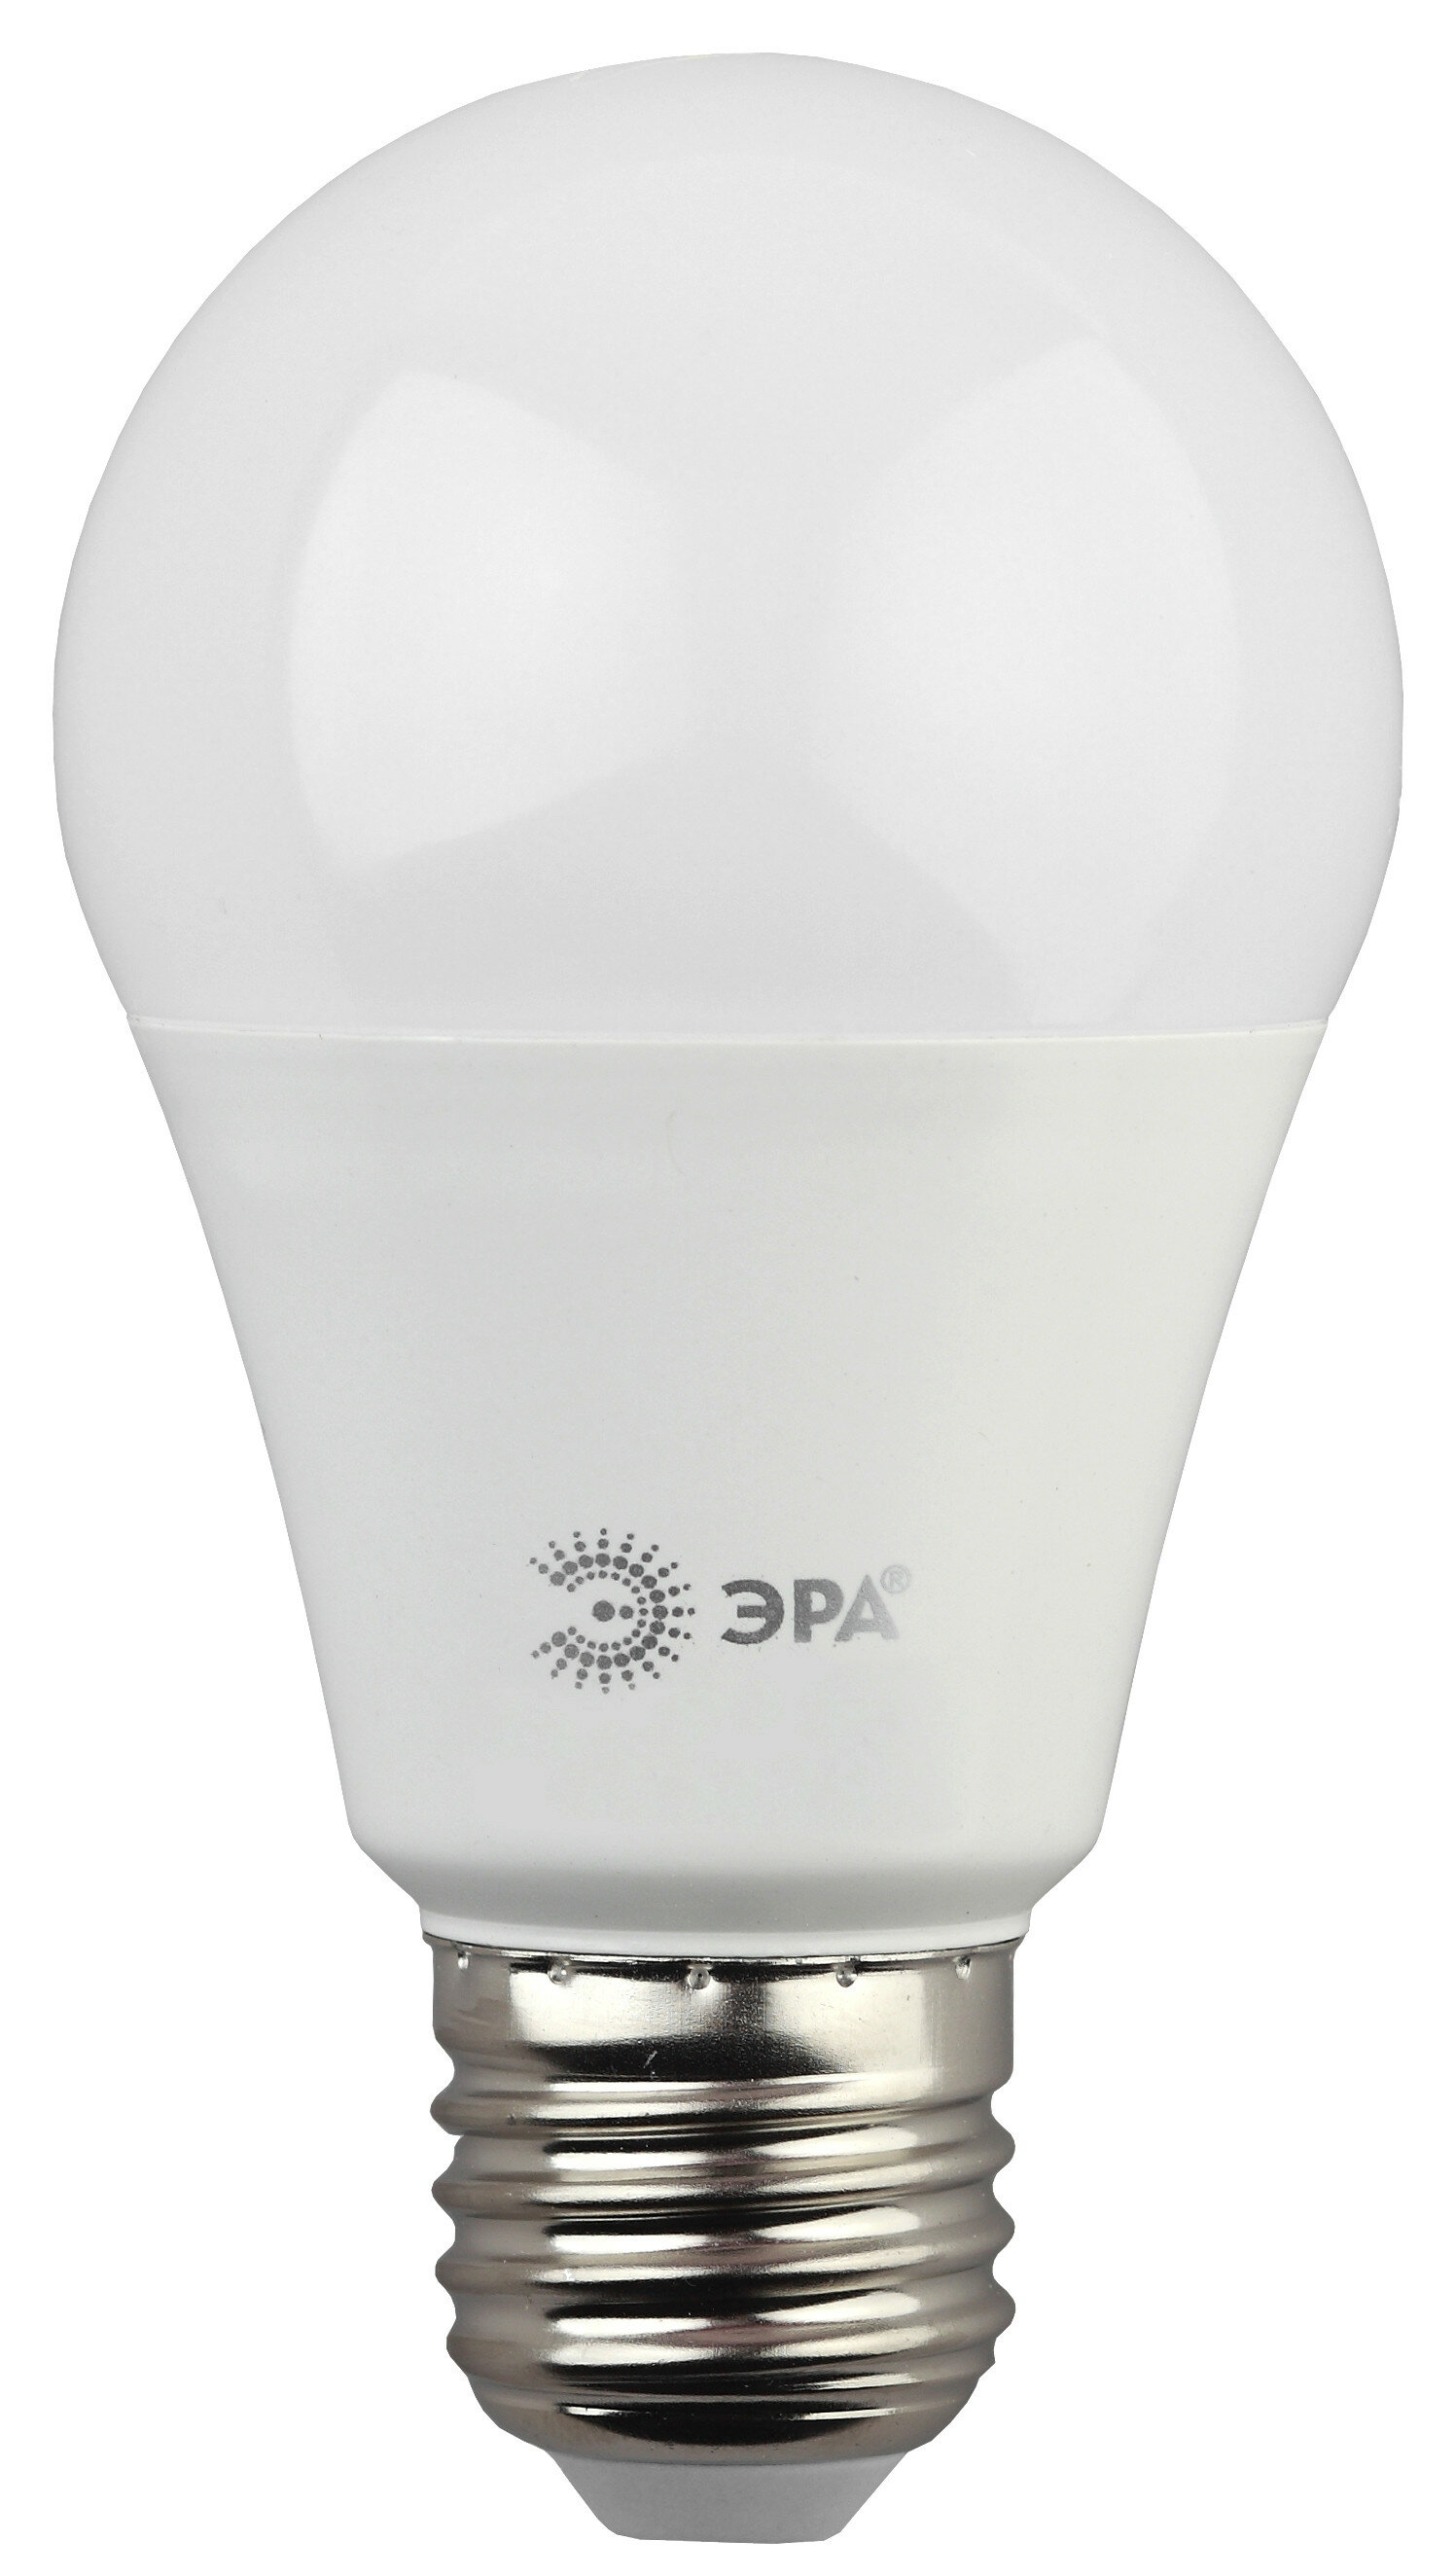 Лампа светодиодная LED груша 13W Е27 1040Лм 2700К 220V (Эра), арт. Б0020536